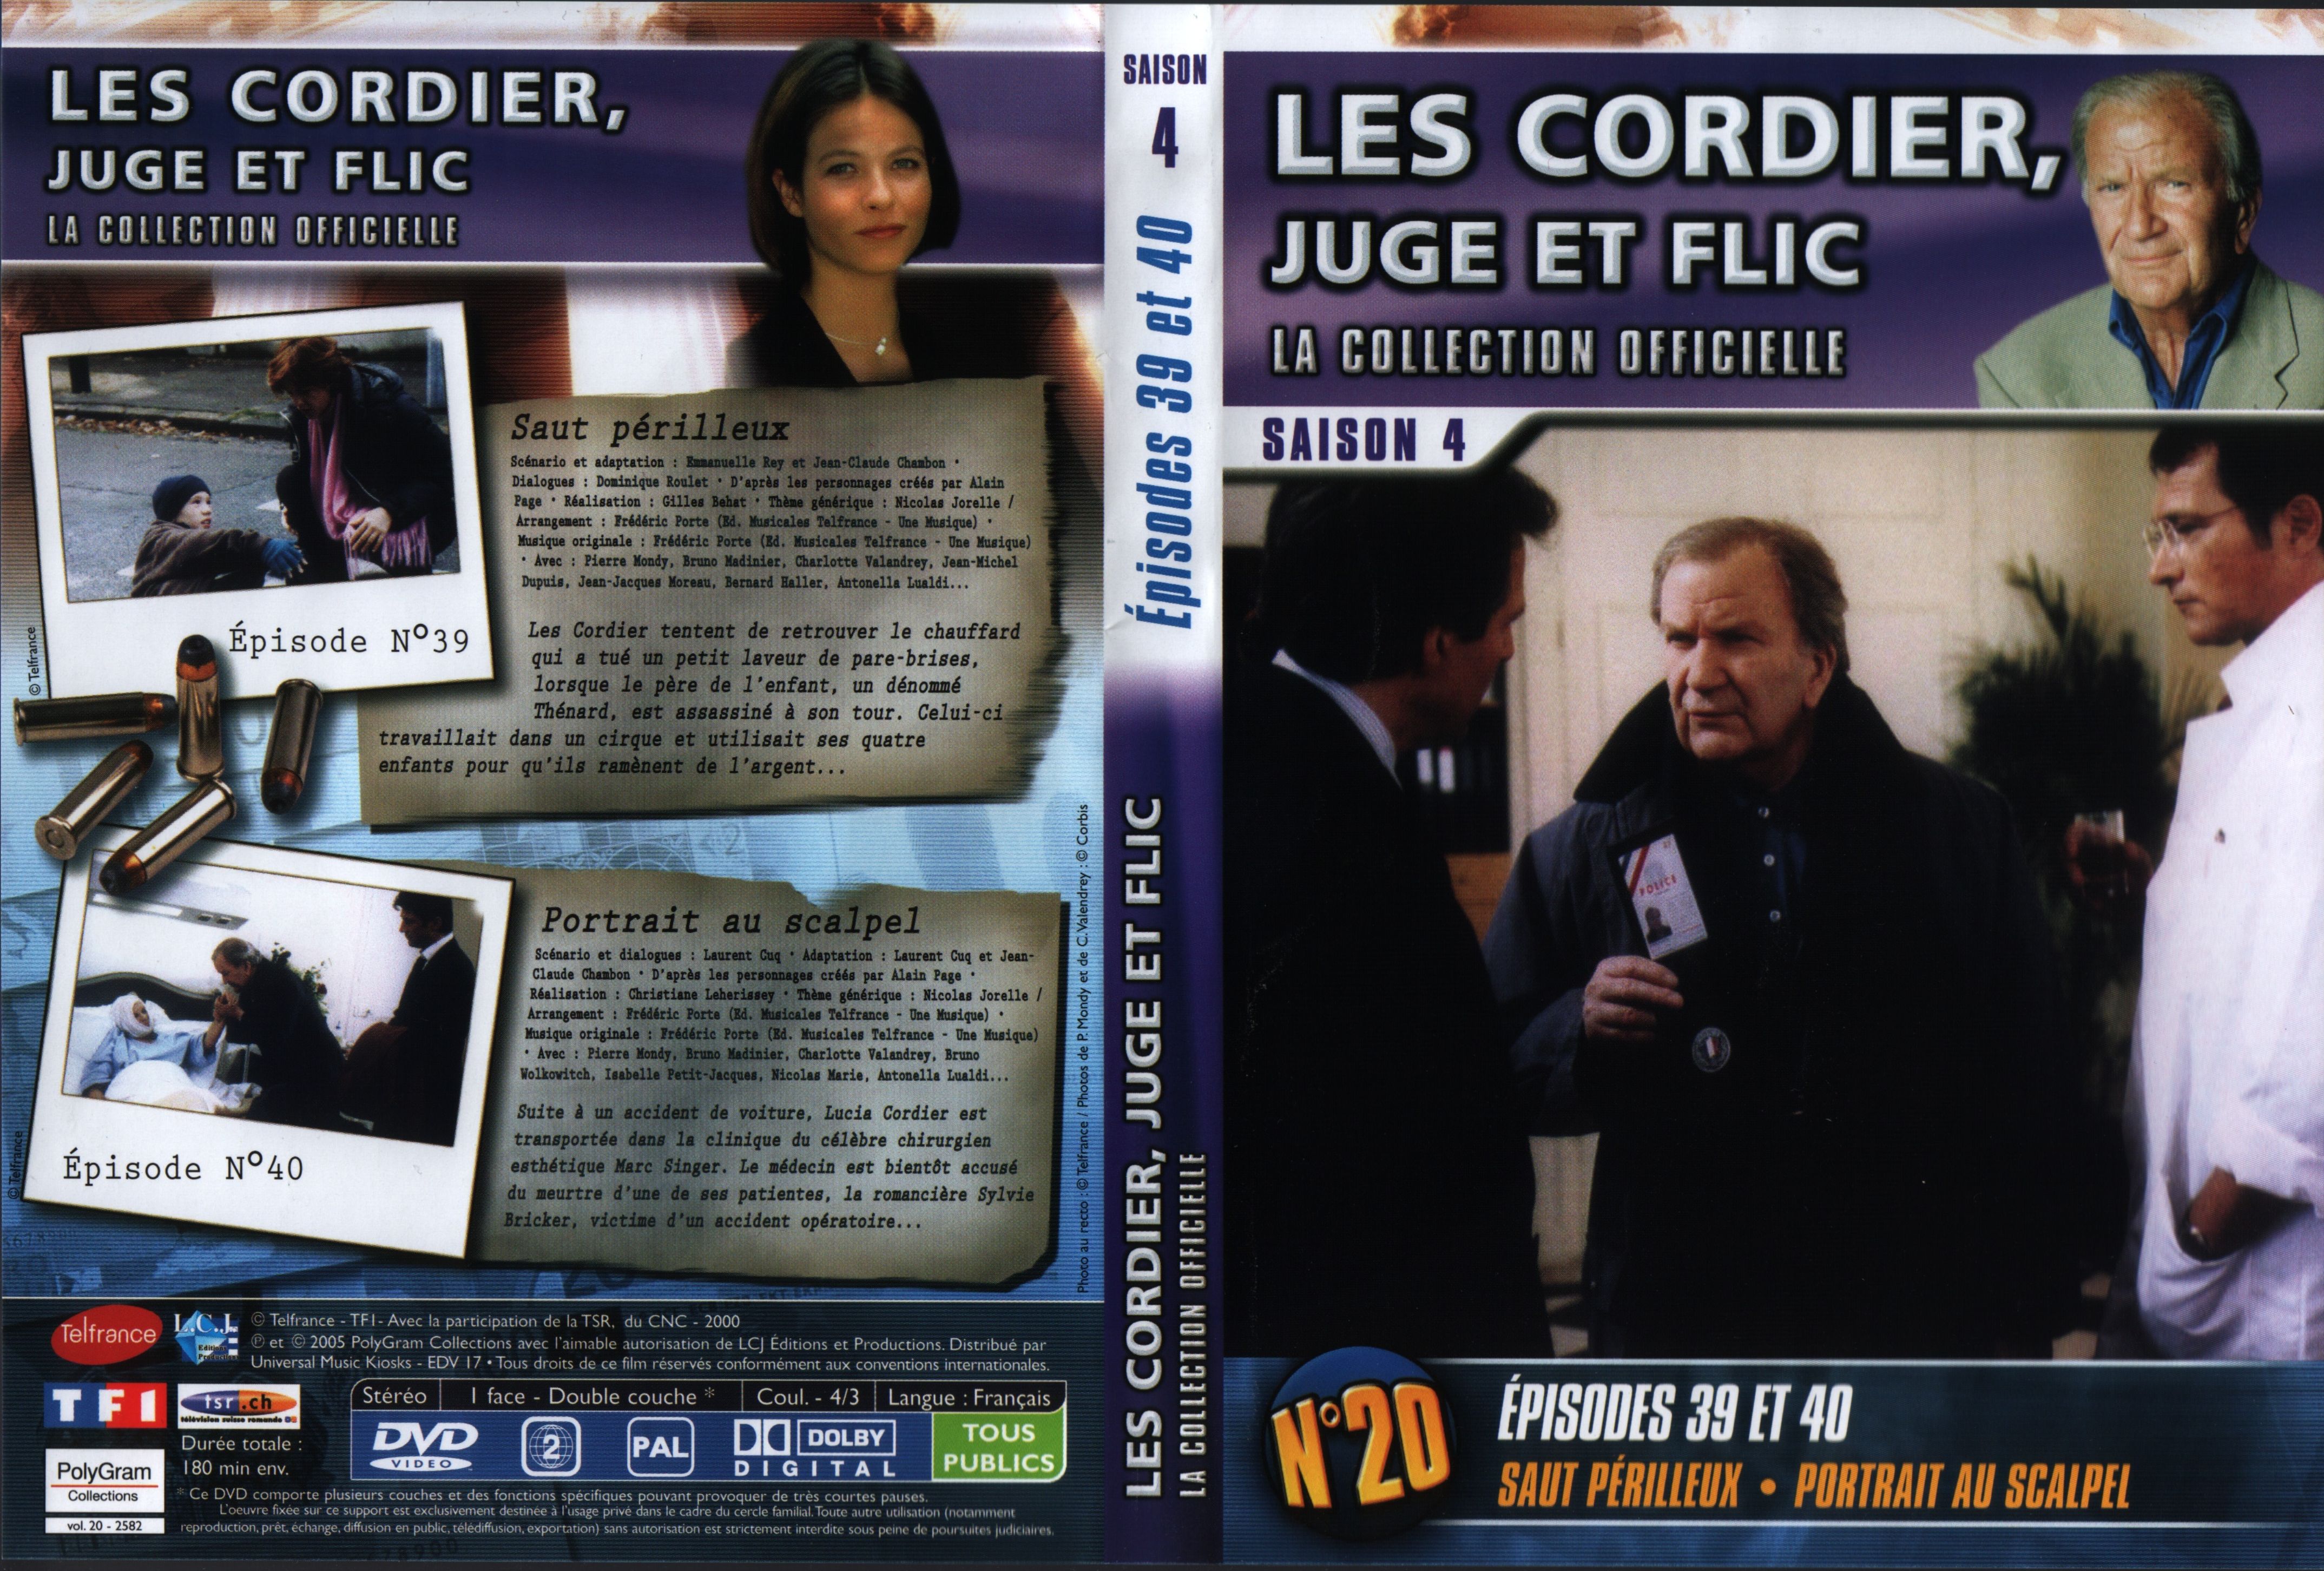 Jaquette DVD Les cordier juge et flic Saison 4 vol 20